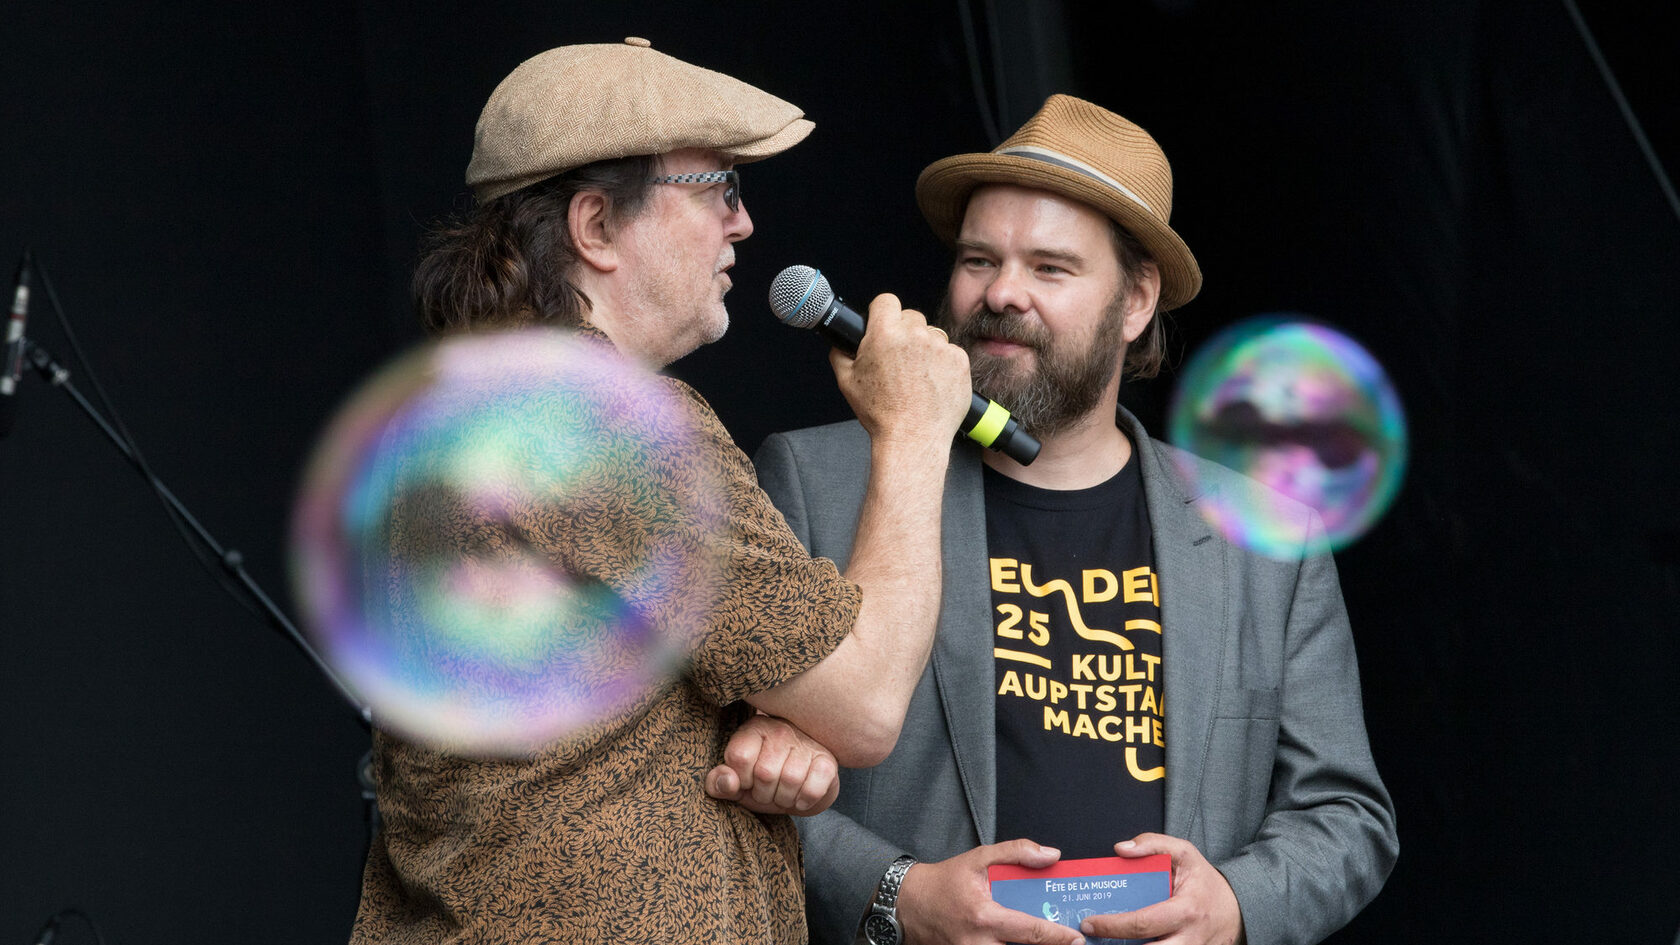 Zwei Künstler unterhalten sich auf der Bühne bei der Fete de la musique meets Europe. Im Vordergrund schweben zwei Seifenblasen.